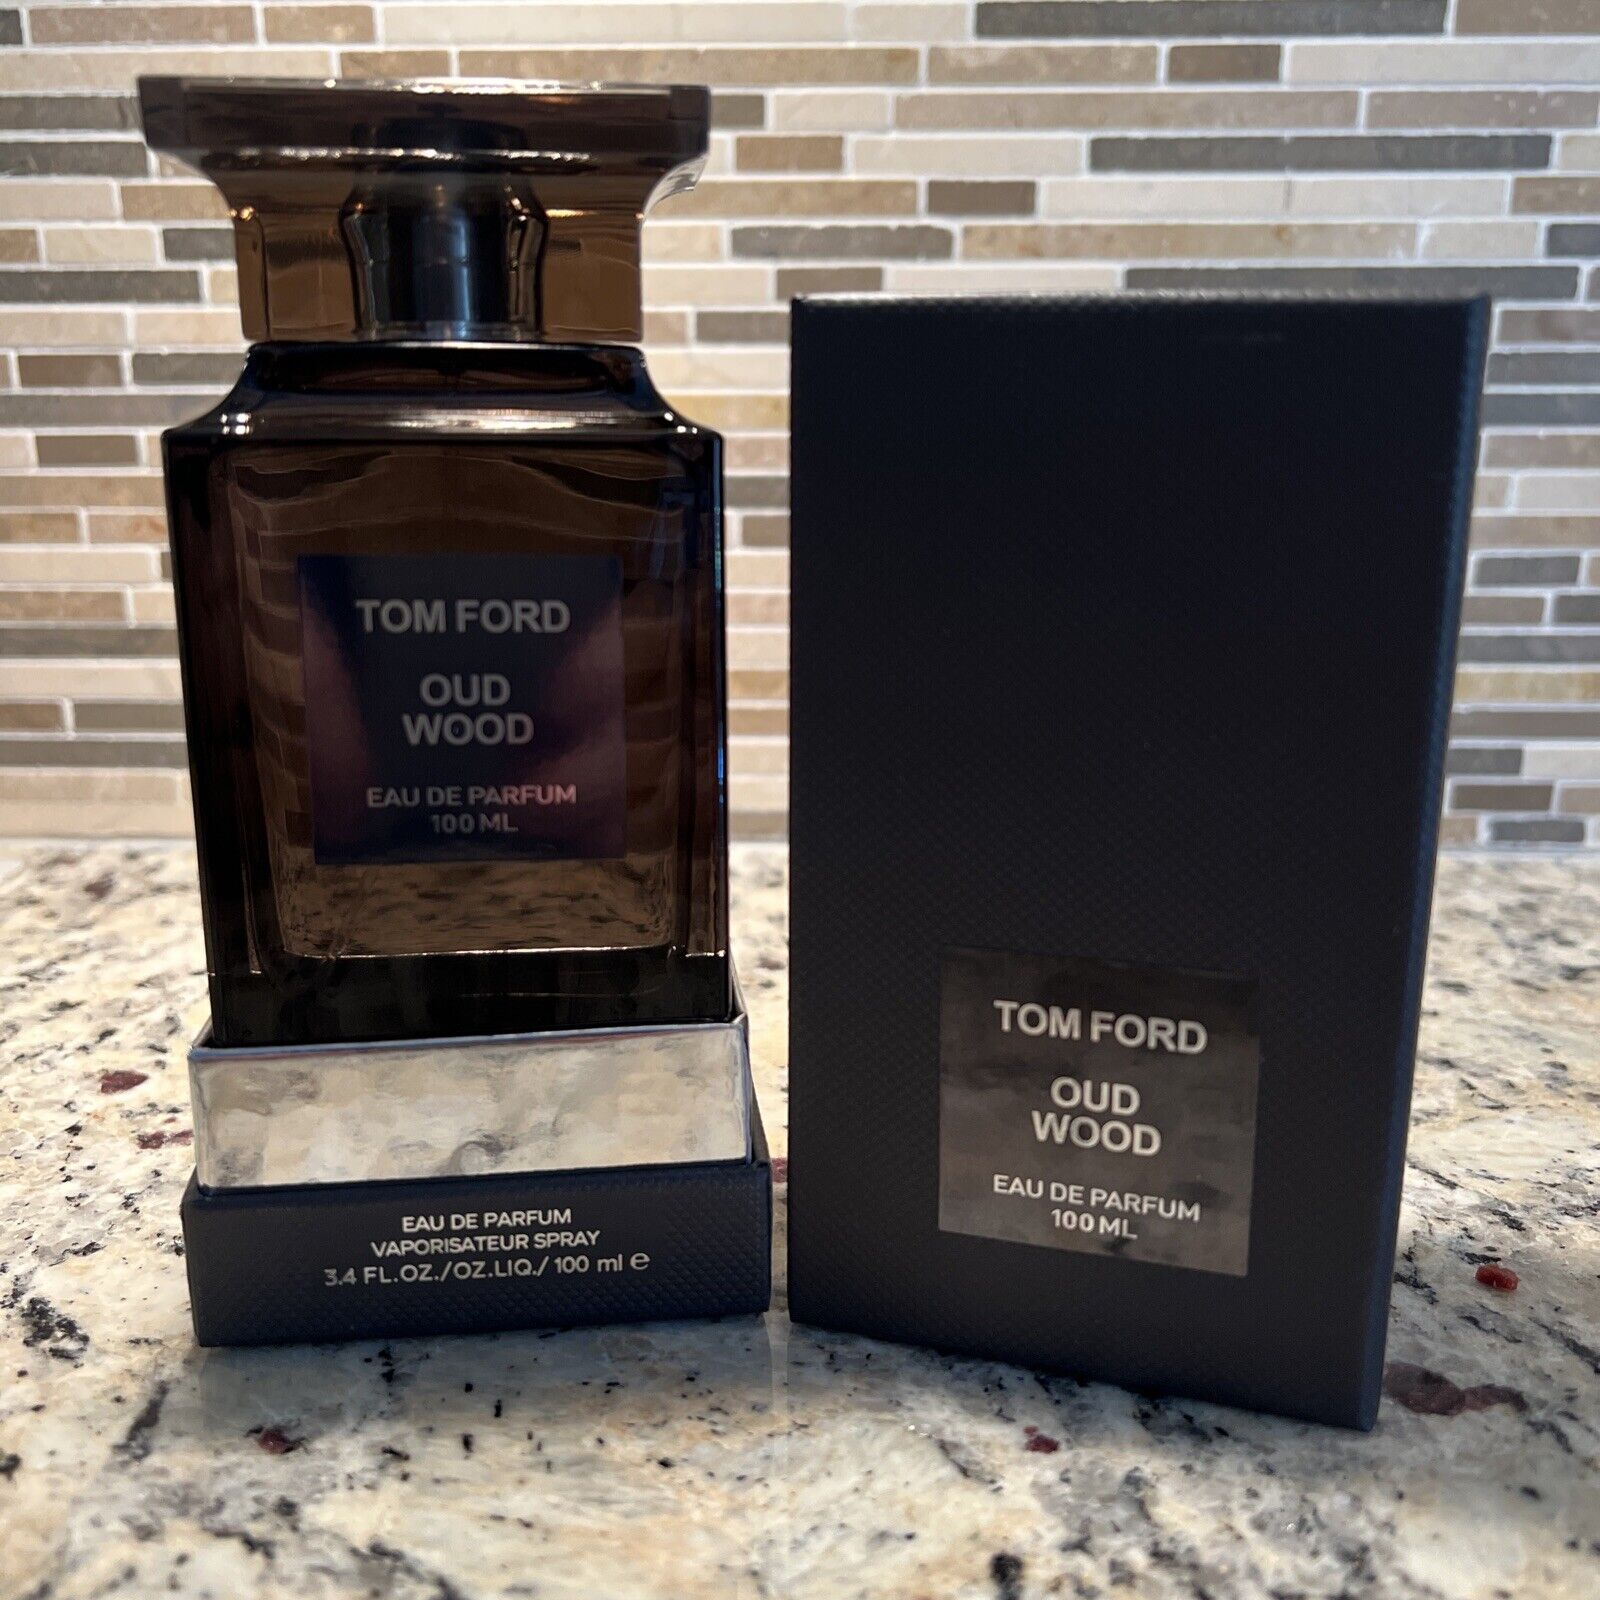 Tom Ford Oud Wood Eau De Parfum spray 100 ml / 3.4 oz